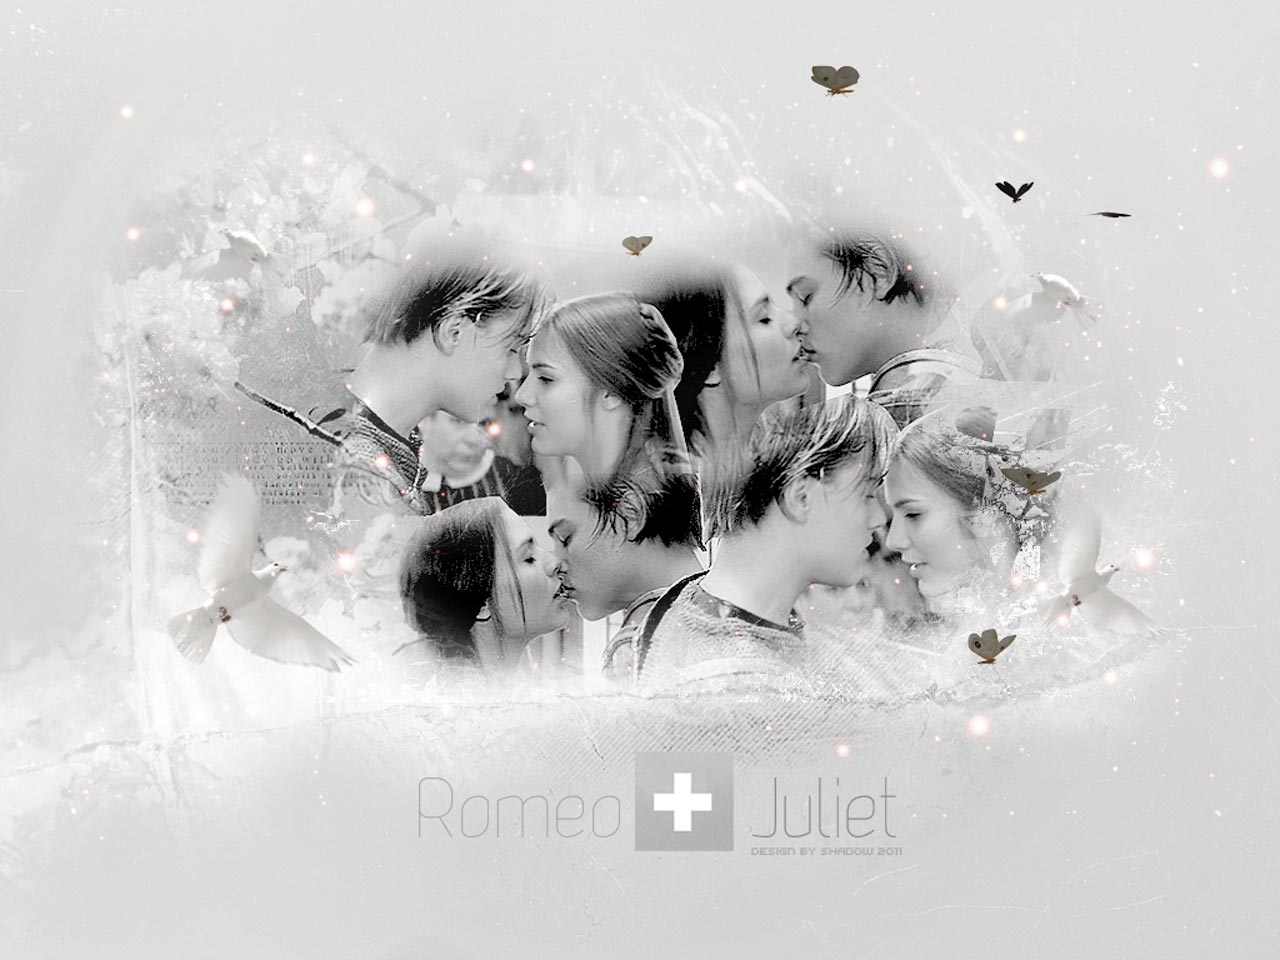 Популярные заставки и фоны Ромео И Джульетта на компьютер